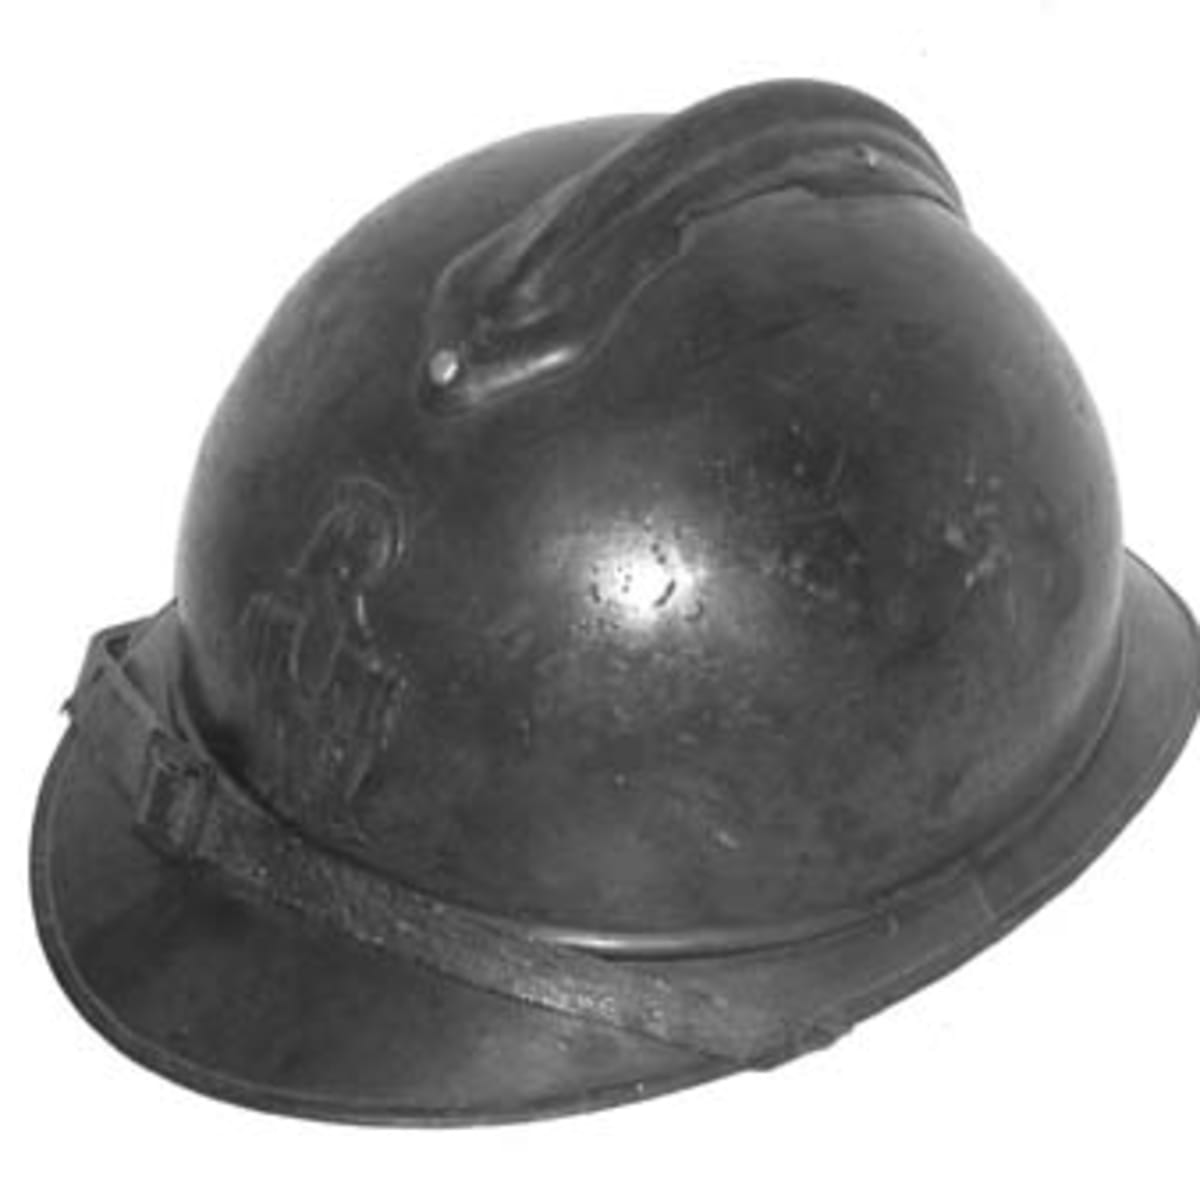 WWI WW1 FRENCH ARMY ADRIAN HELMET STEEL SOLDIER 1915 M15 INFANTRY HELMET